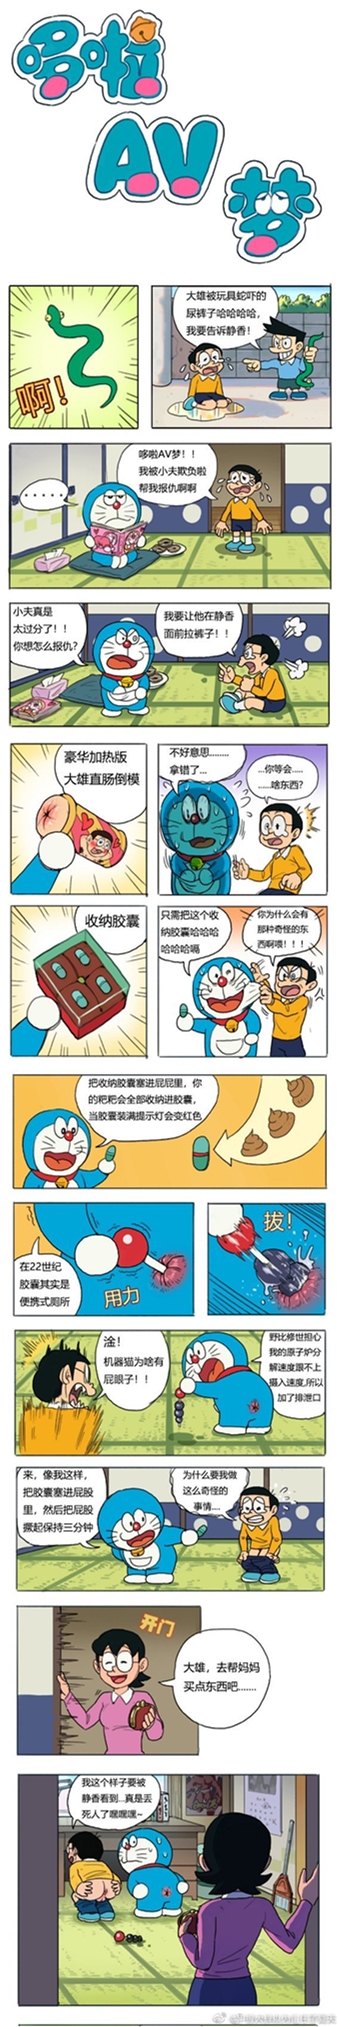 《微博》哆啦A梦六张图梗介绍